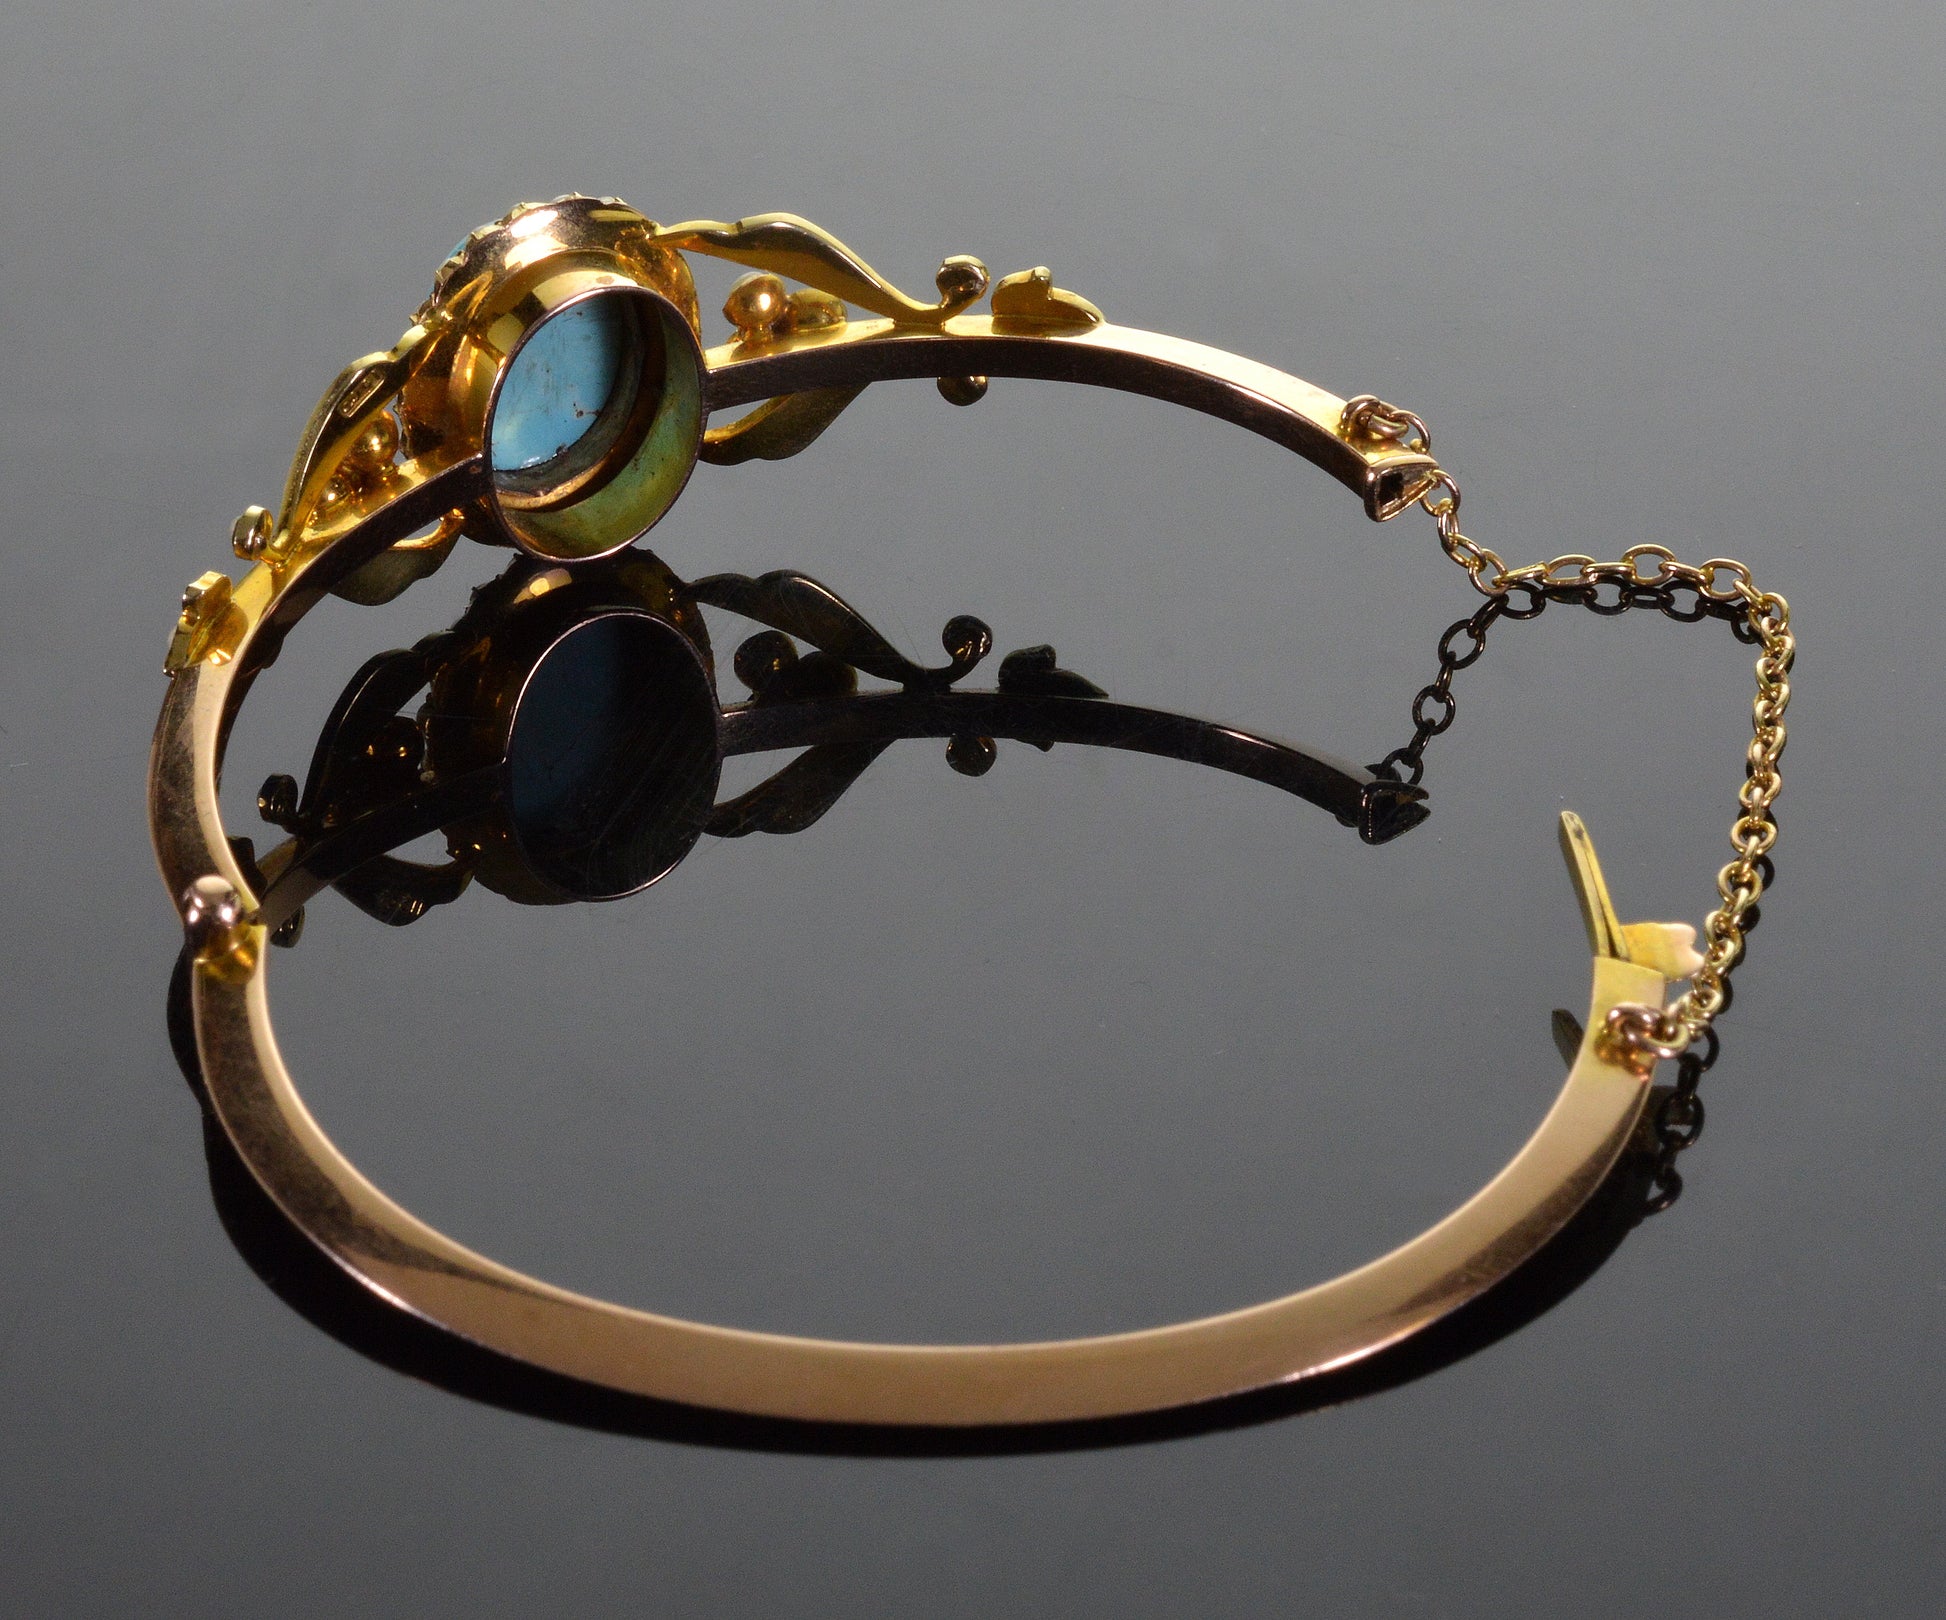 Antique Edwardian 15K Gold Turquoise Pearl Bangle Bracelet C.1900